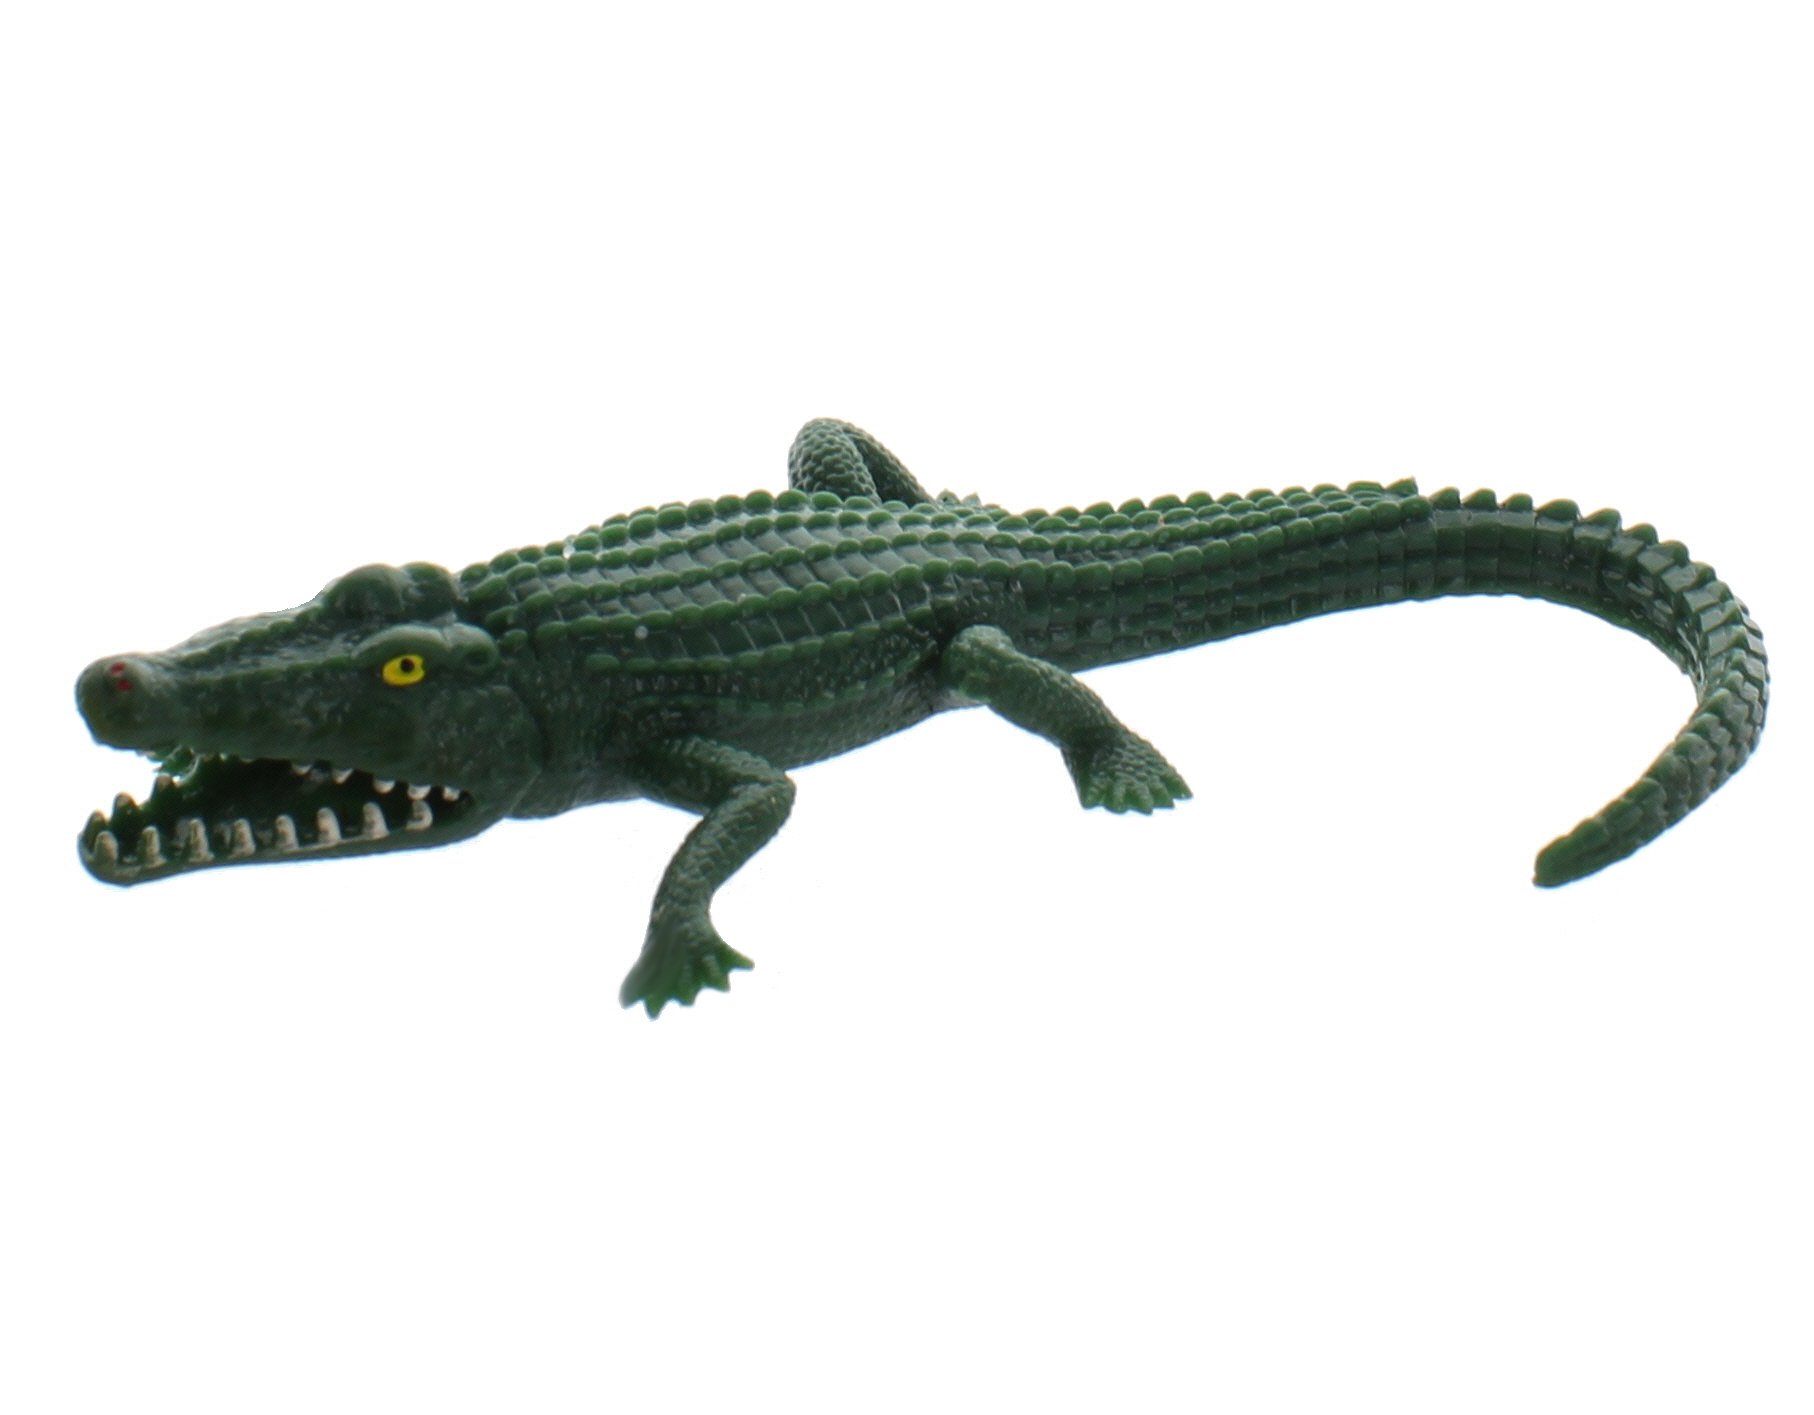 stretchy alligator toy